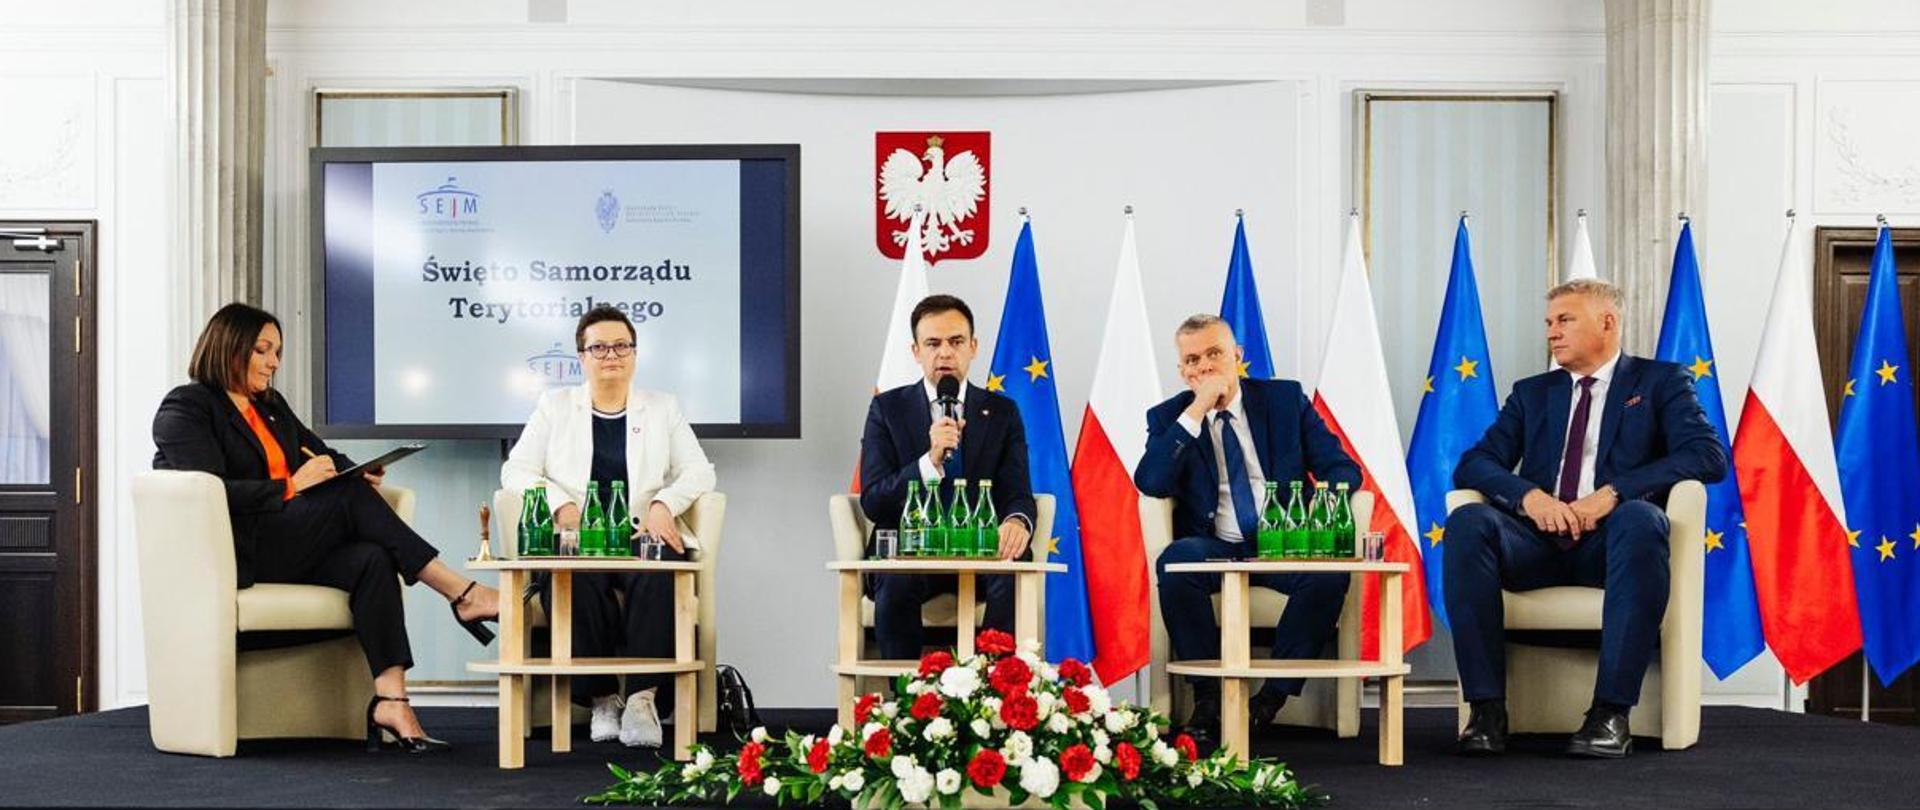 Minister finansów Andrzej Domański wraz z innymi uczestnikami konferencji w Sejmie